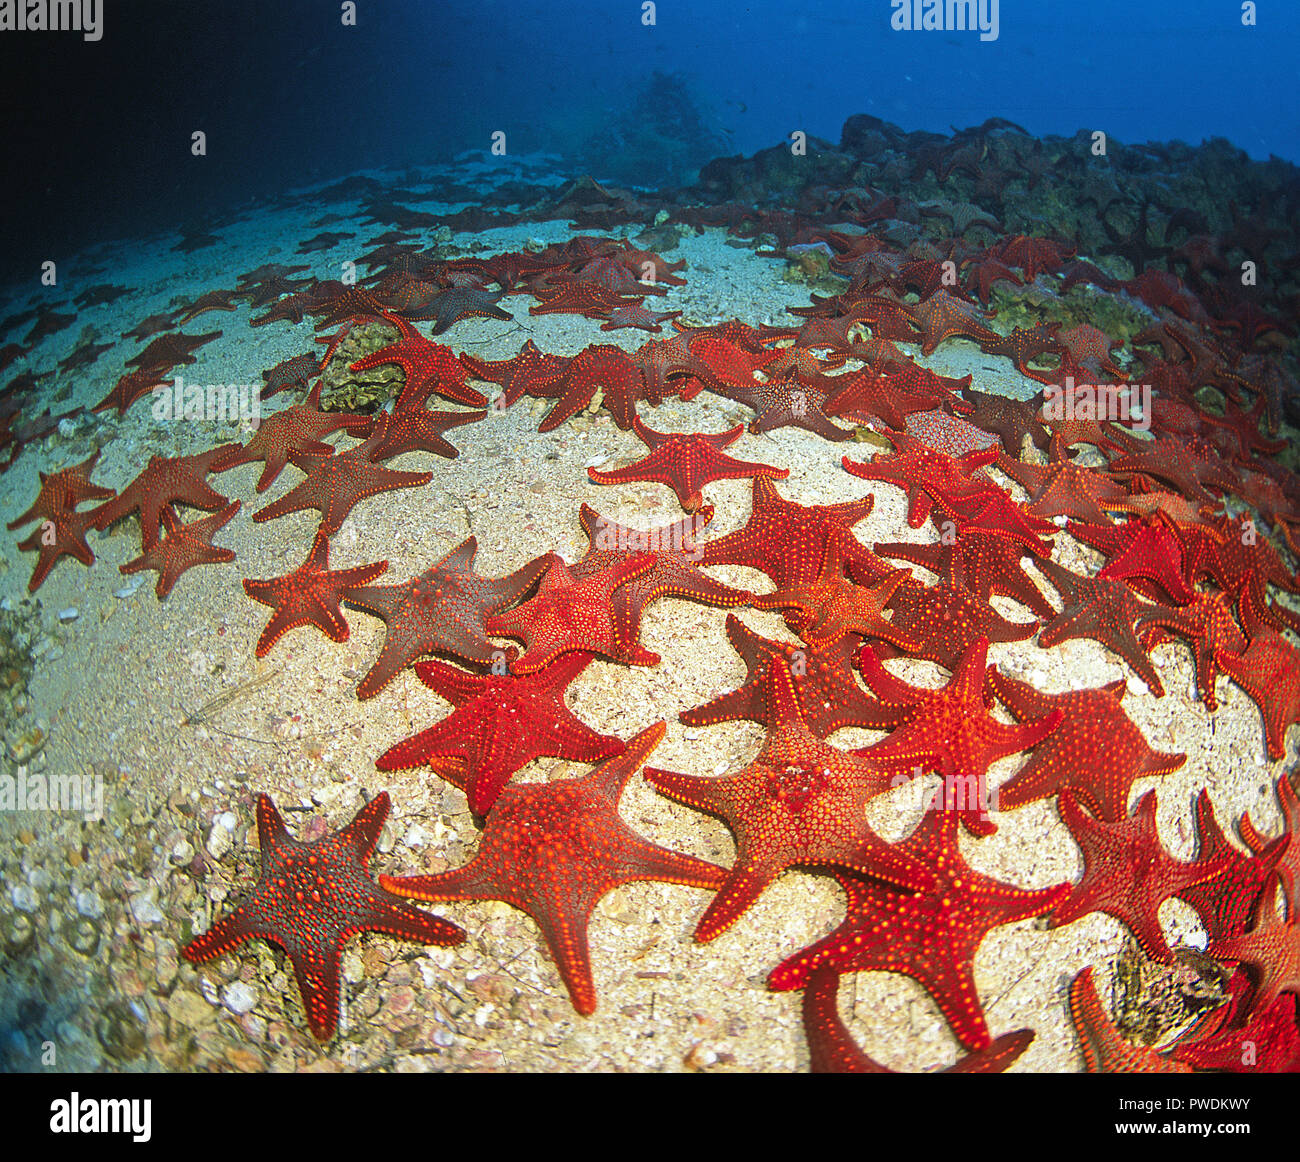 De nombreuses étoiles de mer coussin Panamic, Cuming's sea star ou étoile de mer (Galápagos Pentaceraster cumingi), îles Galapagos, Equateur Banque D'Images